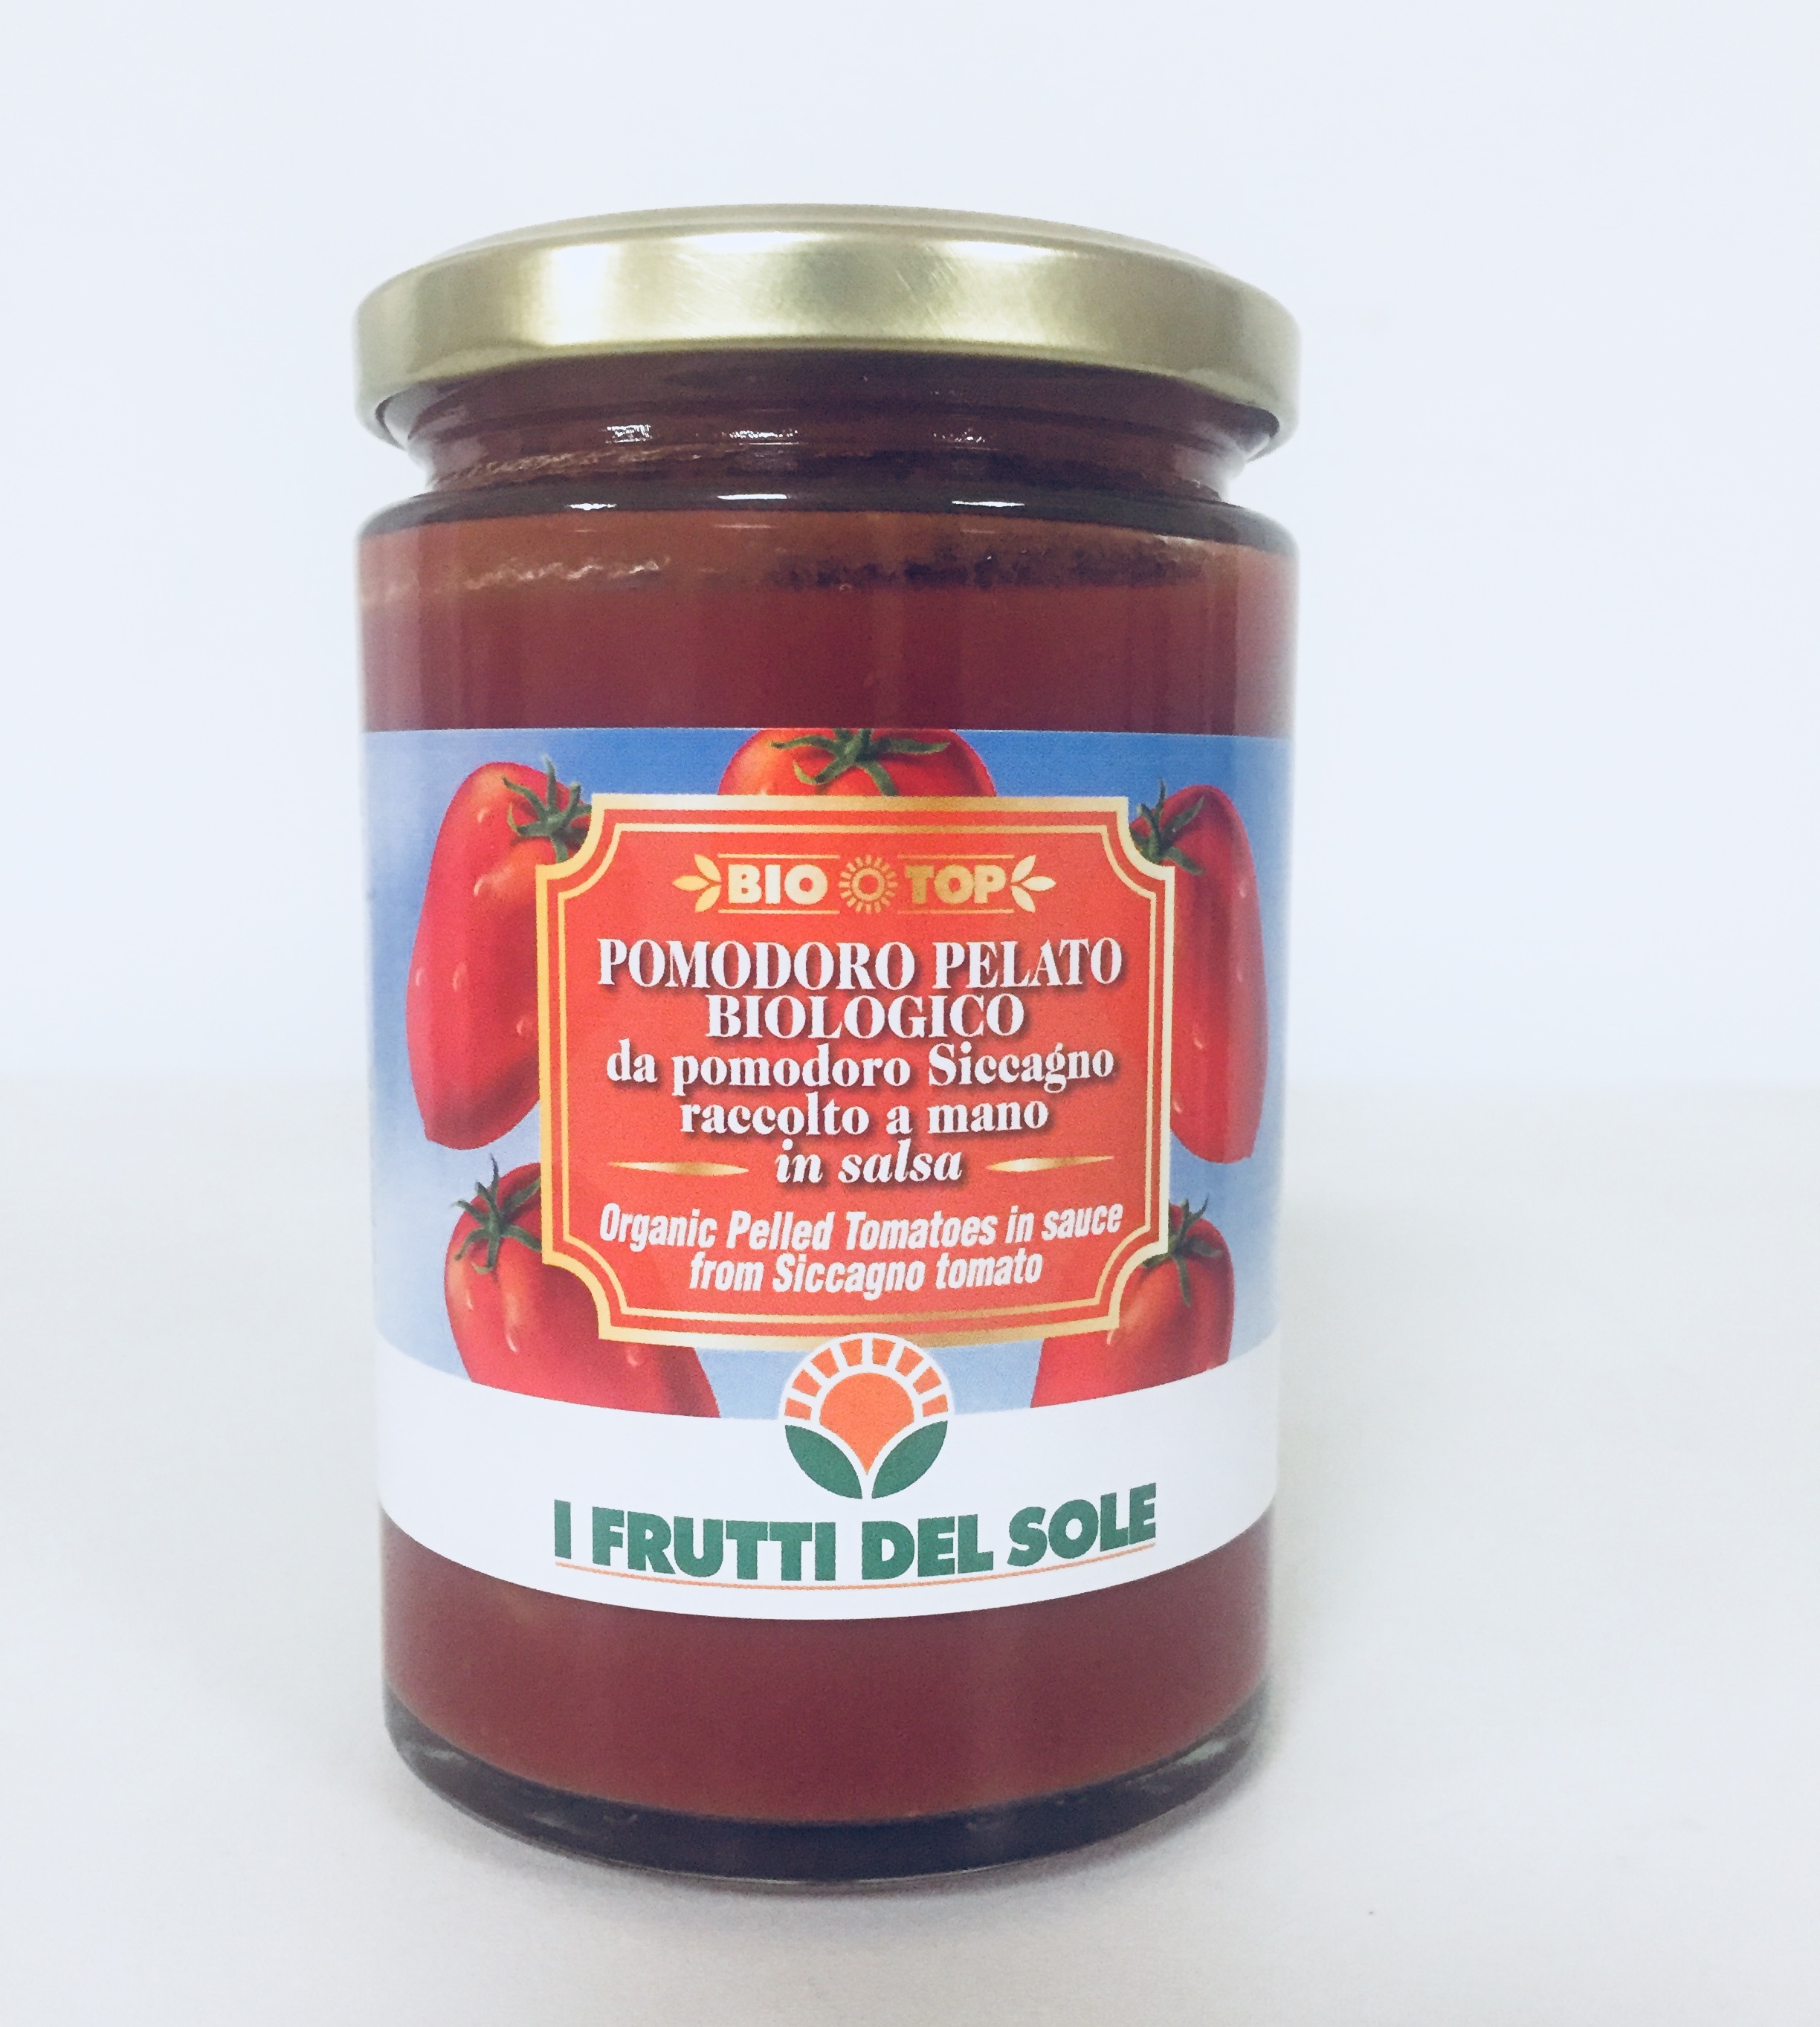 Pomodoro pelato bio in salsa da pomodoro Siccagno!